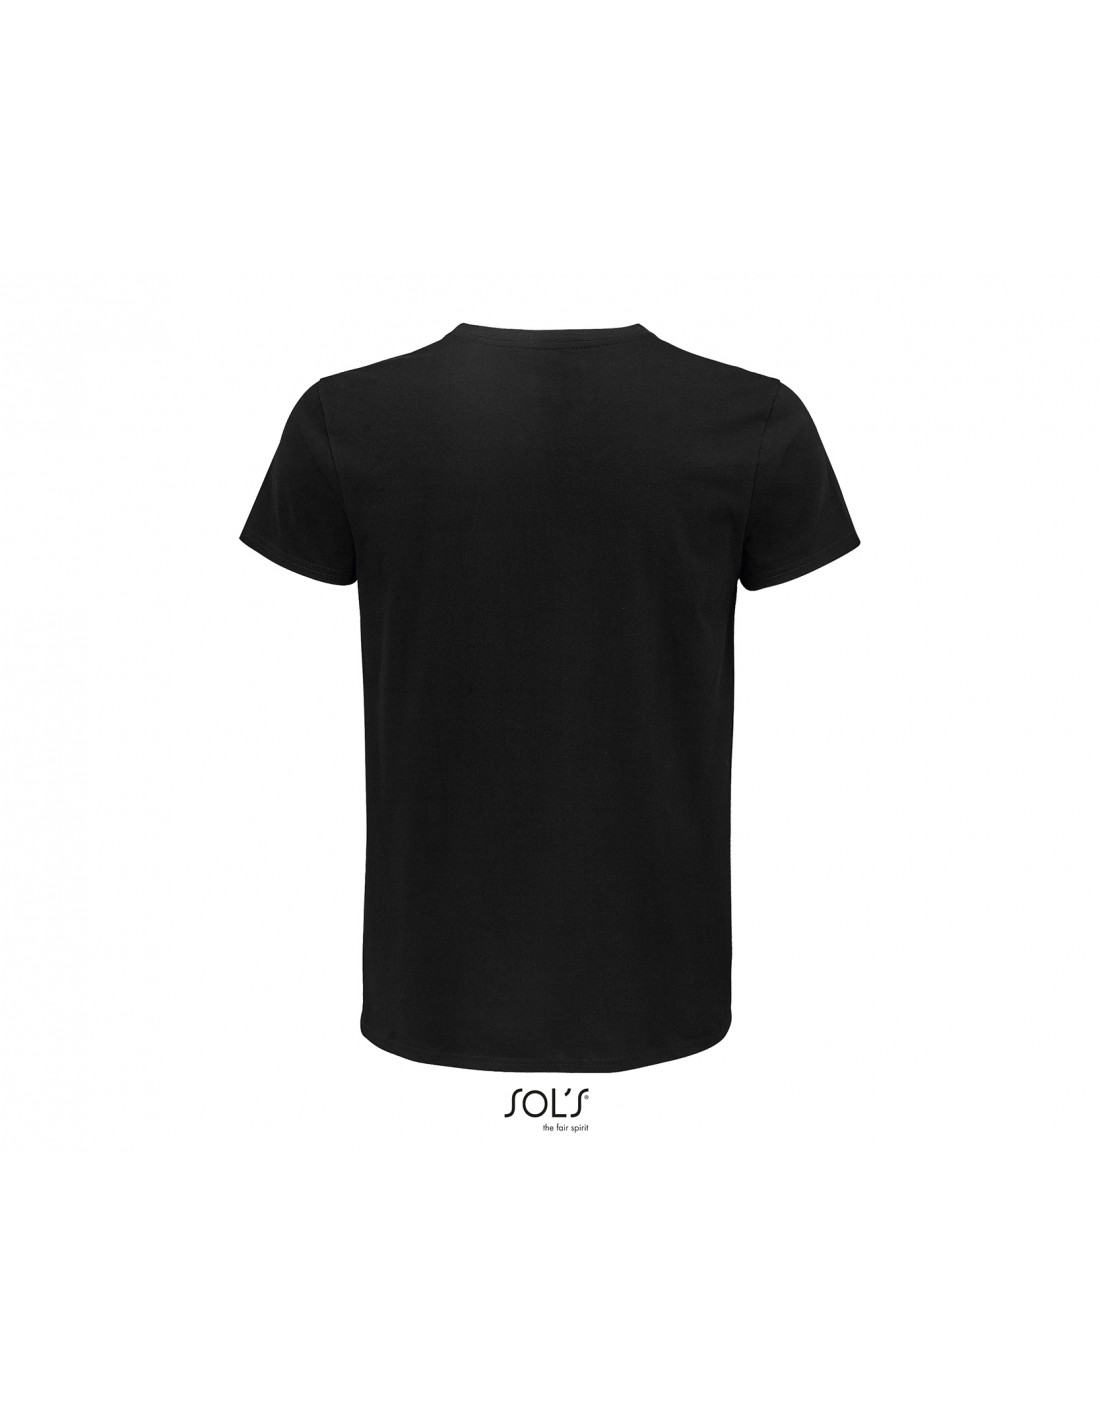 Camiseta Negra Alta Calidad Personalizada Impresión 27x30cm